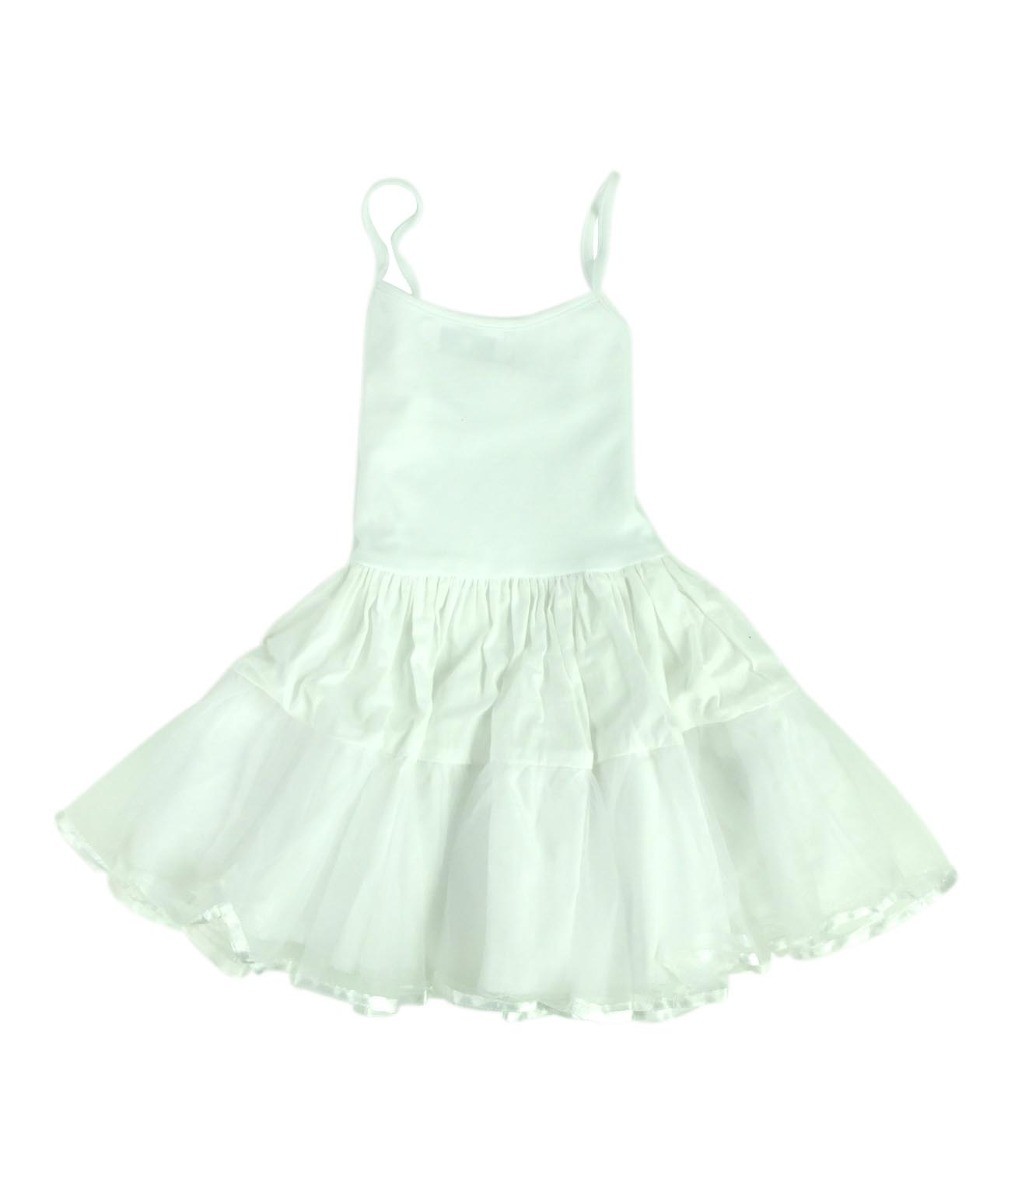 Baby Mädchen Pettikot Baumwollenkleid - Weiß